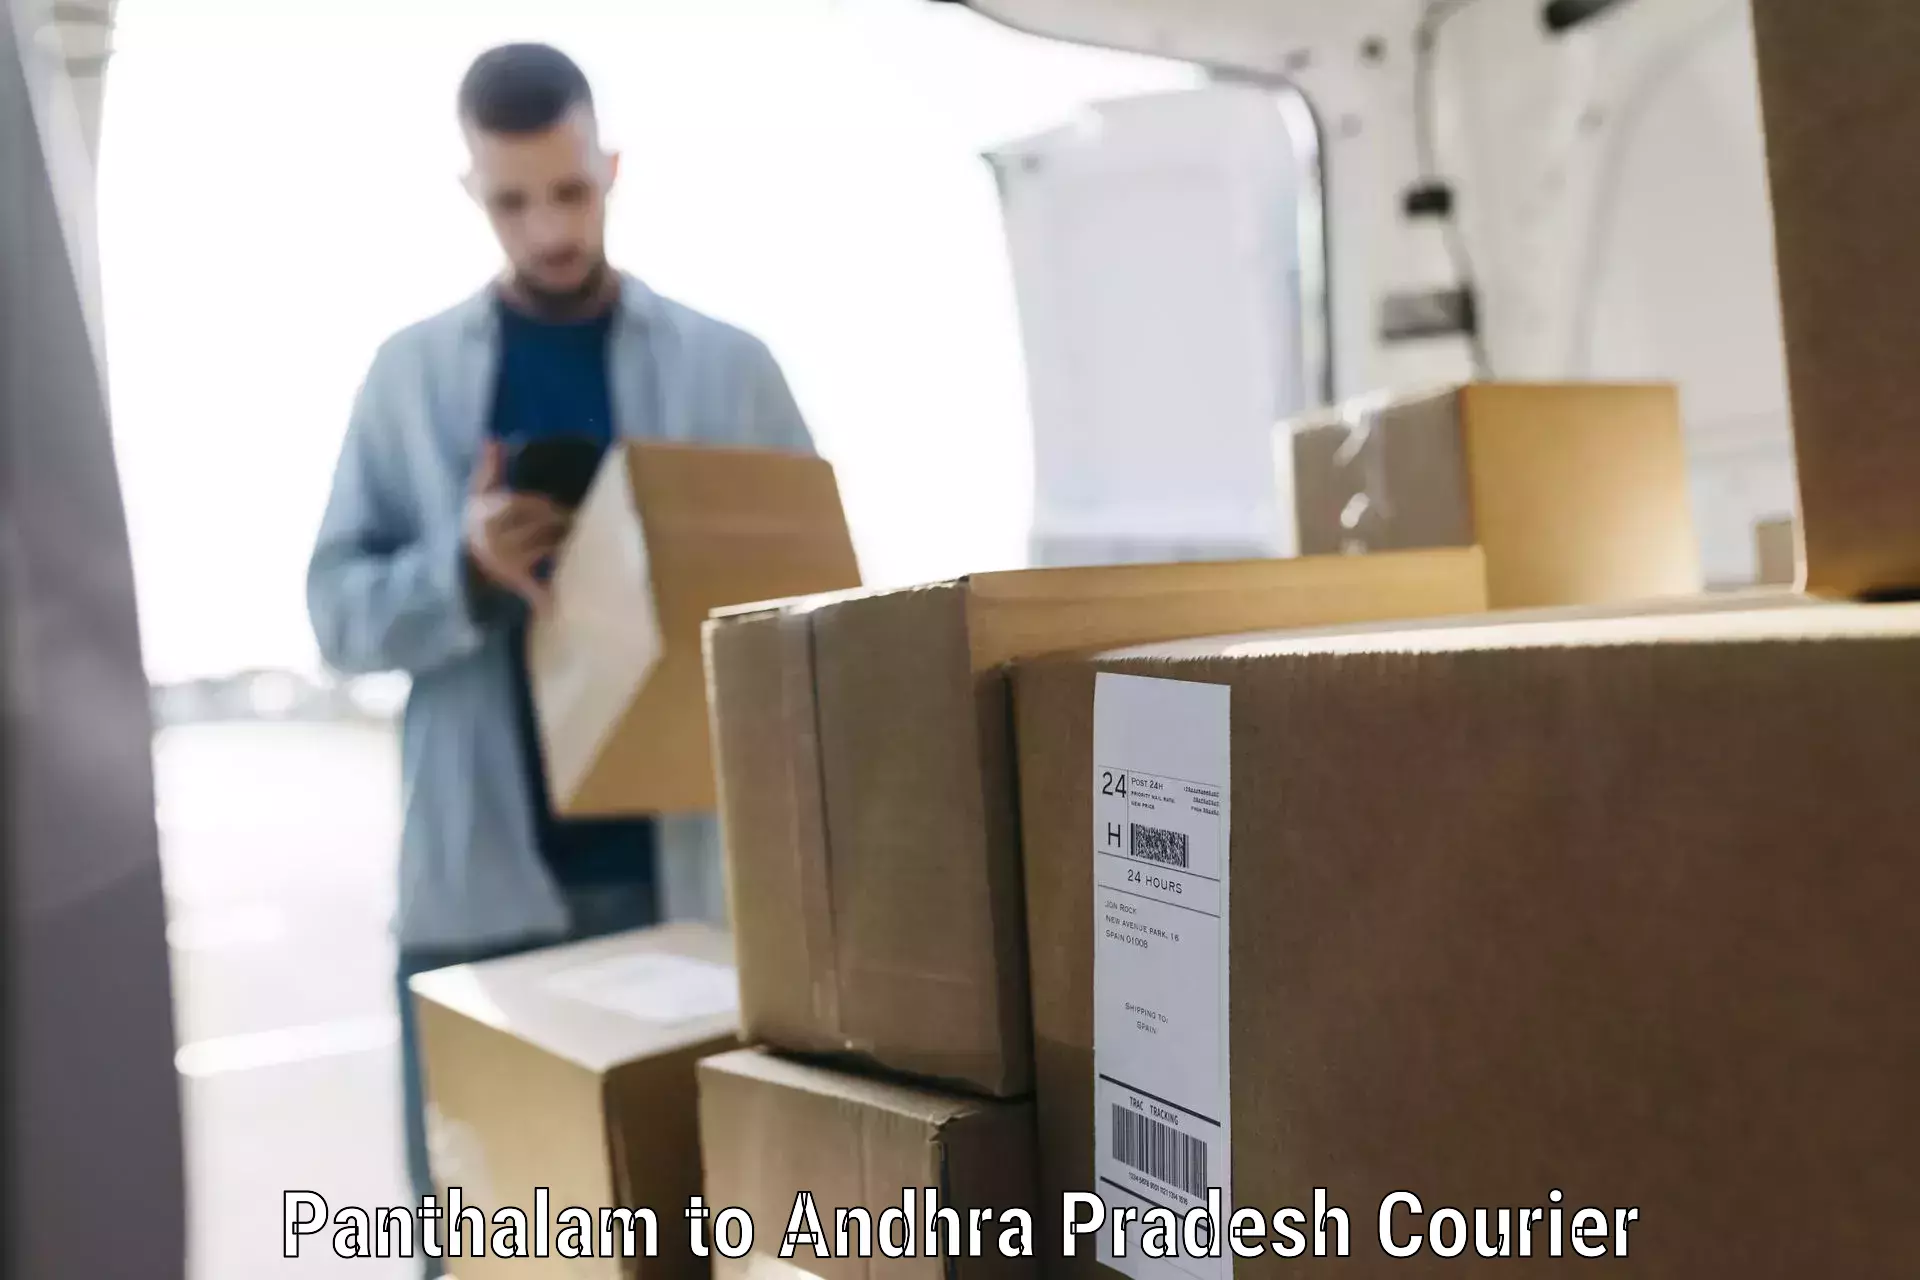 Baggage transport network Panthalam to Andhra Pradesh